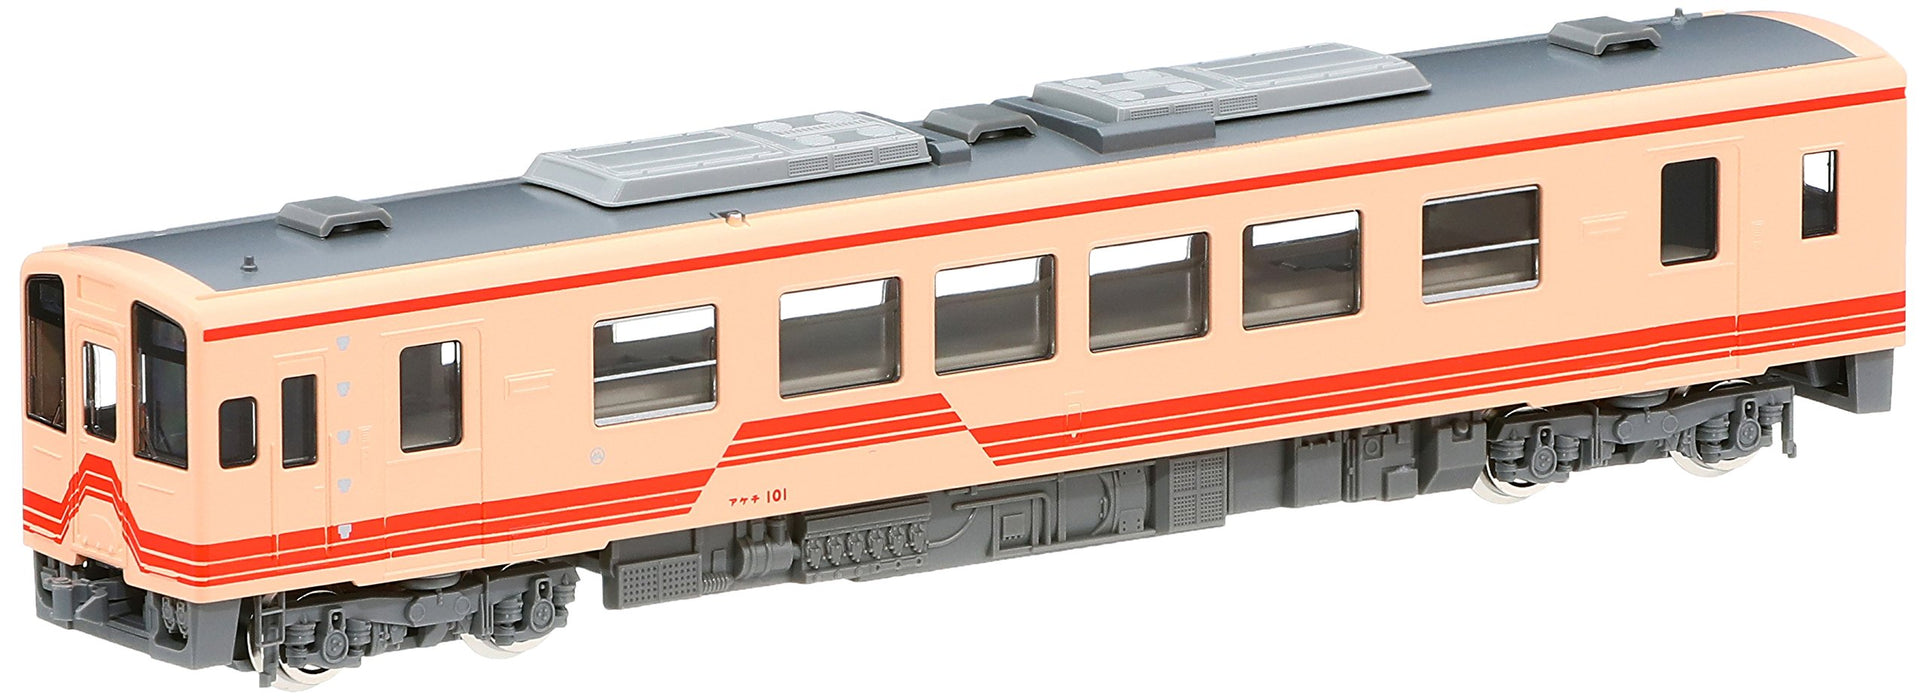 Tomytec Tomix Akechi Railway 101 Diesel Car Model - N Gauge 2618 Type